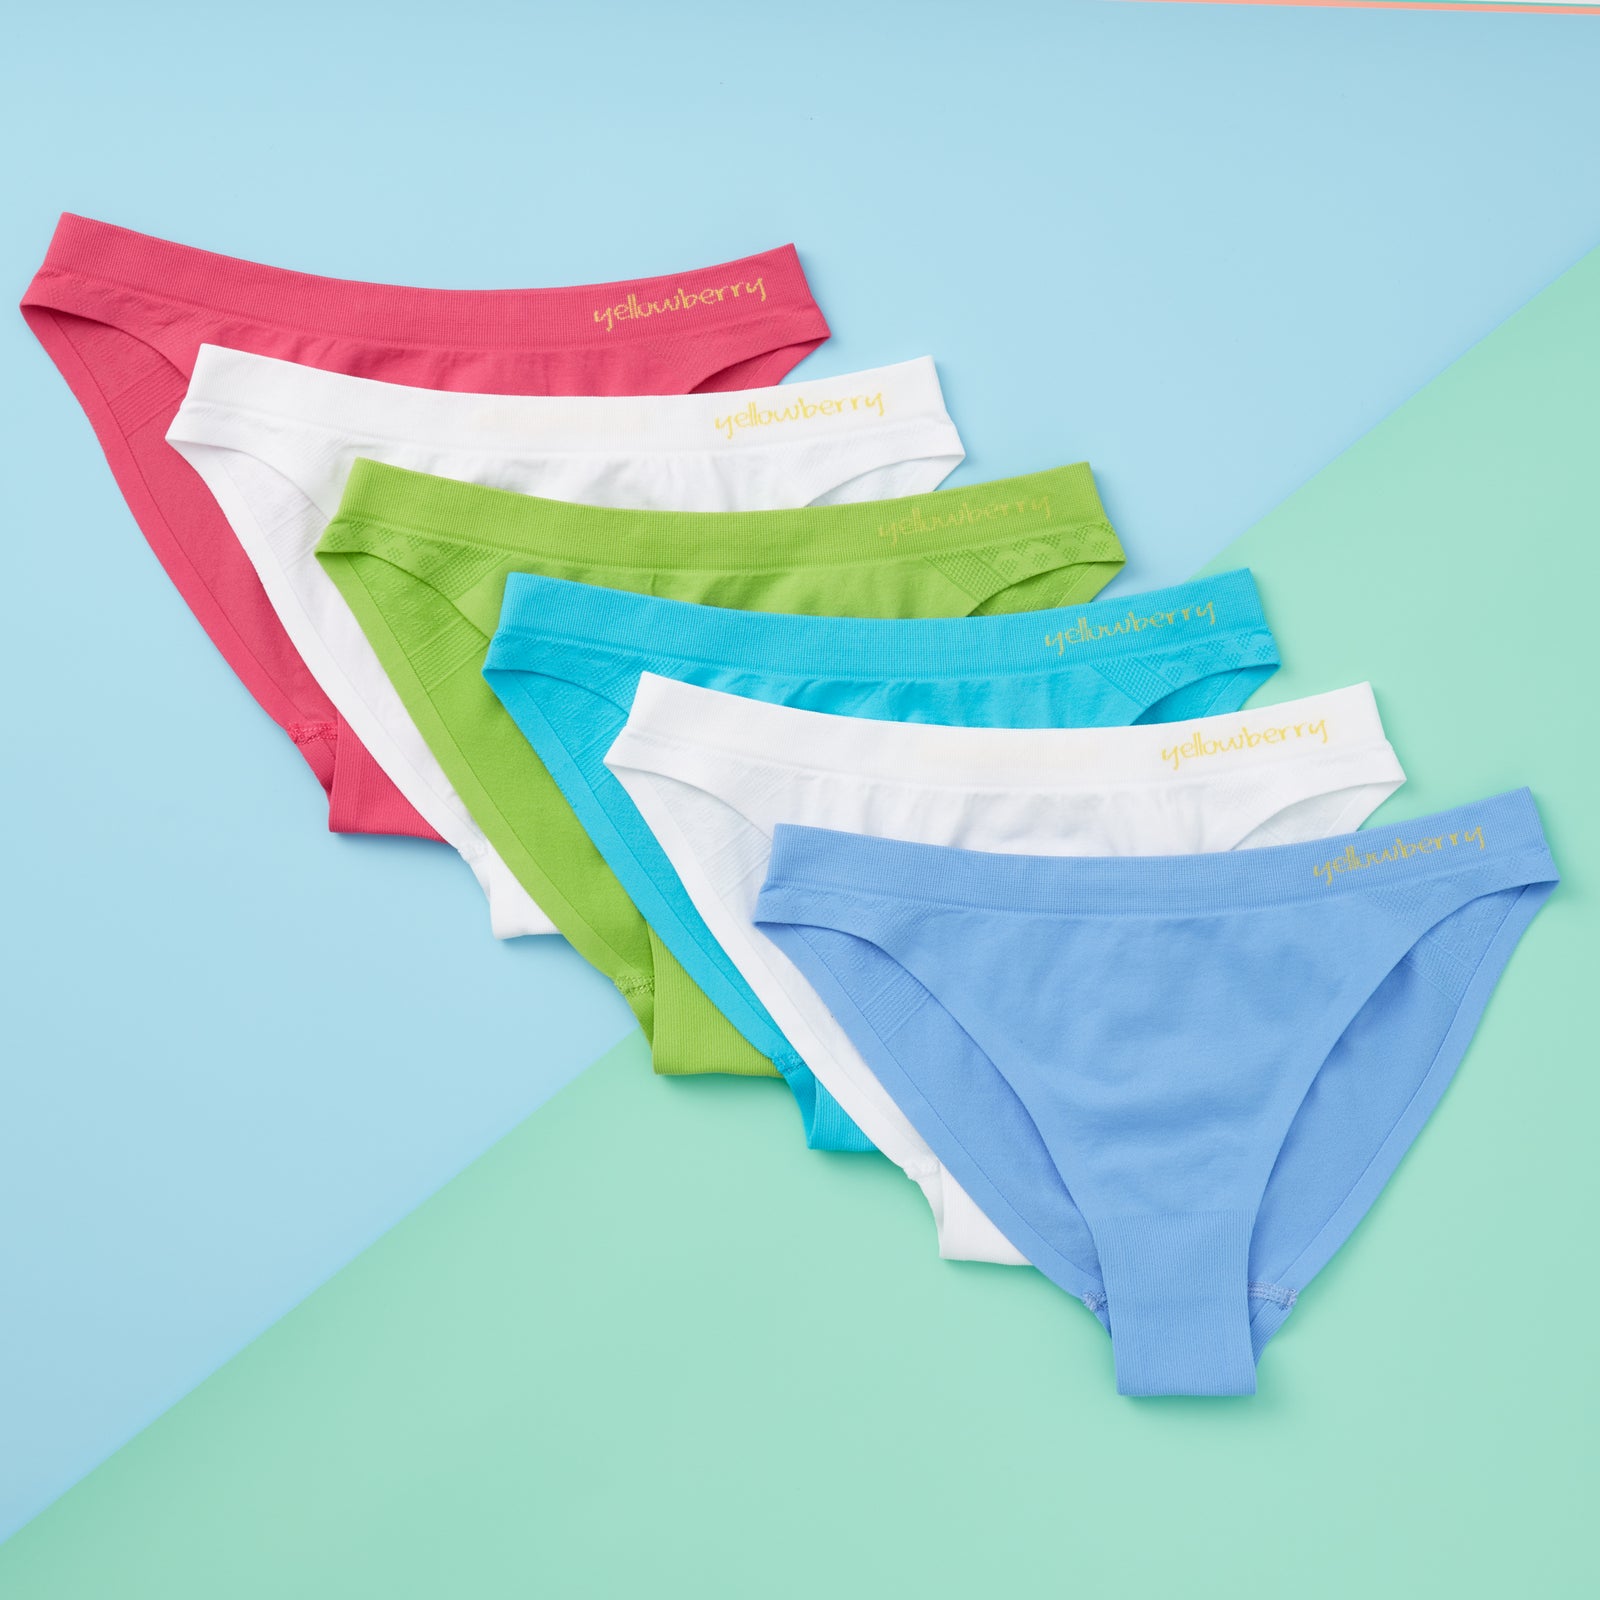  Kiench Teens Underwear Thongs Cotton Junior Girls